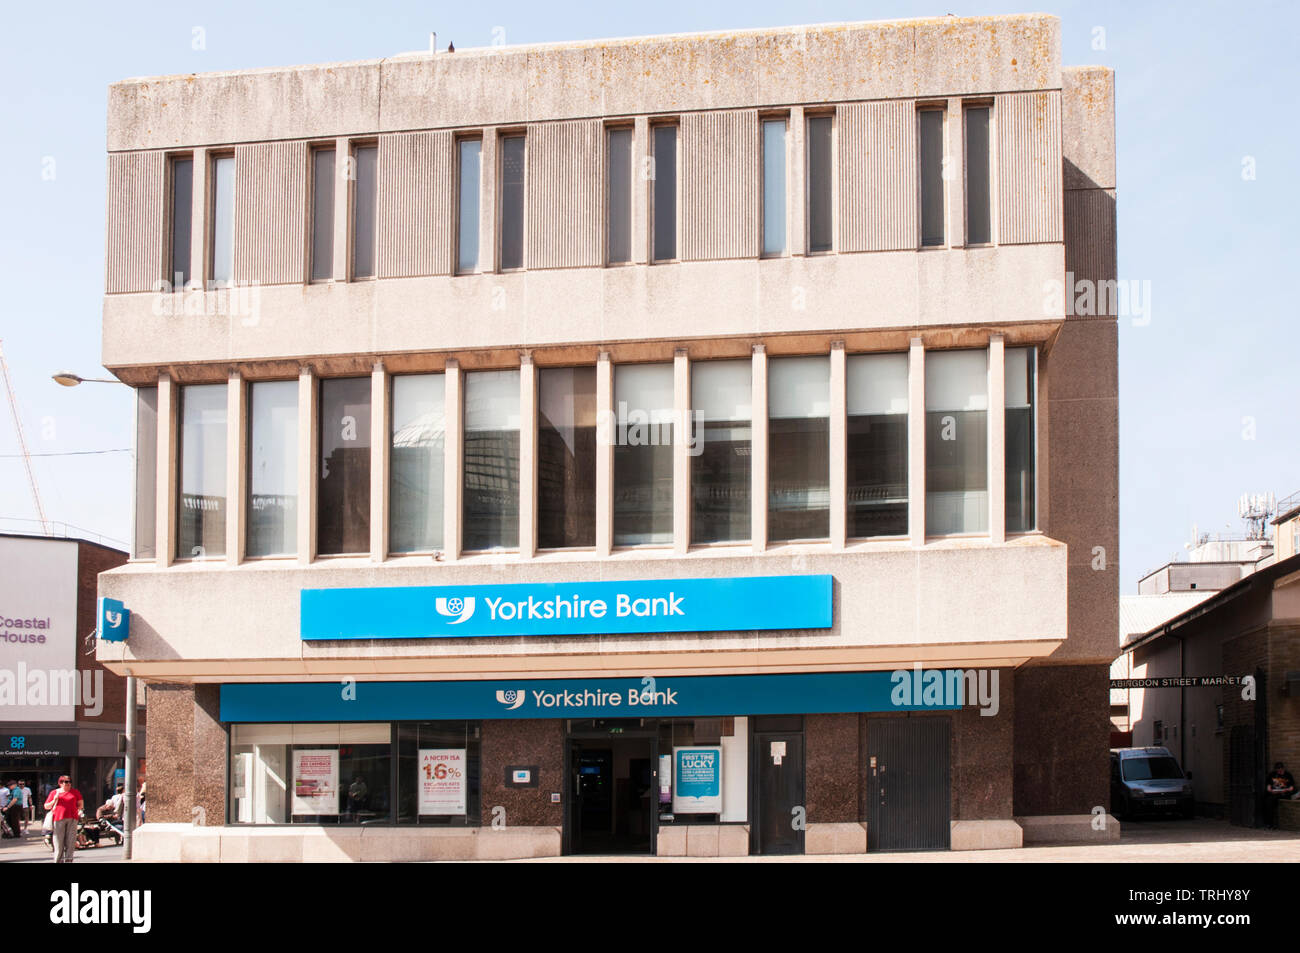 Die Yorkshire Bank Gebäude in St Johns Square Blackpool Lancashire England UK in Leeds im Jahr 1859 gestartet und fordert Westen Reiten Penny Sparkasse Stockfoto